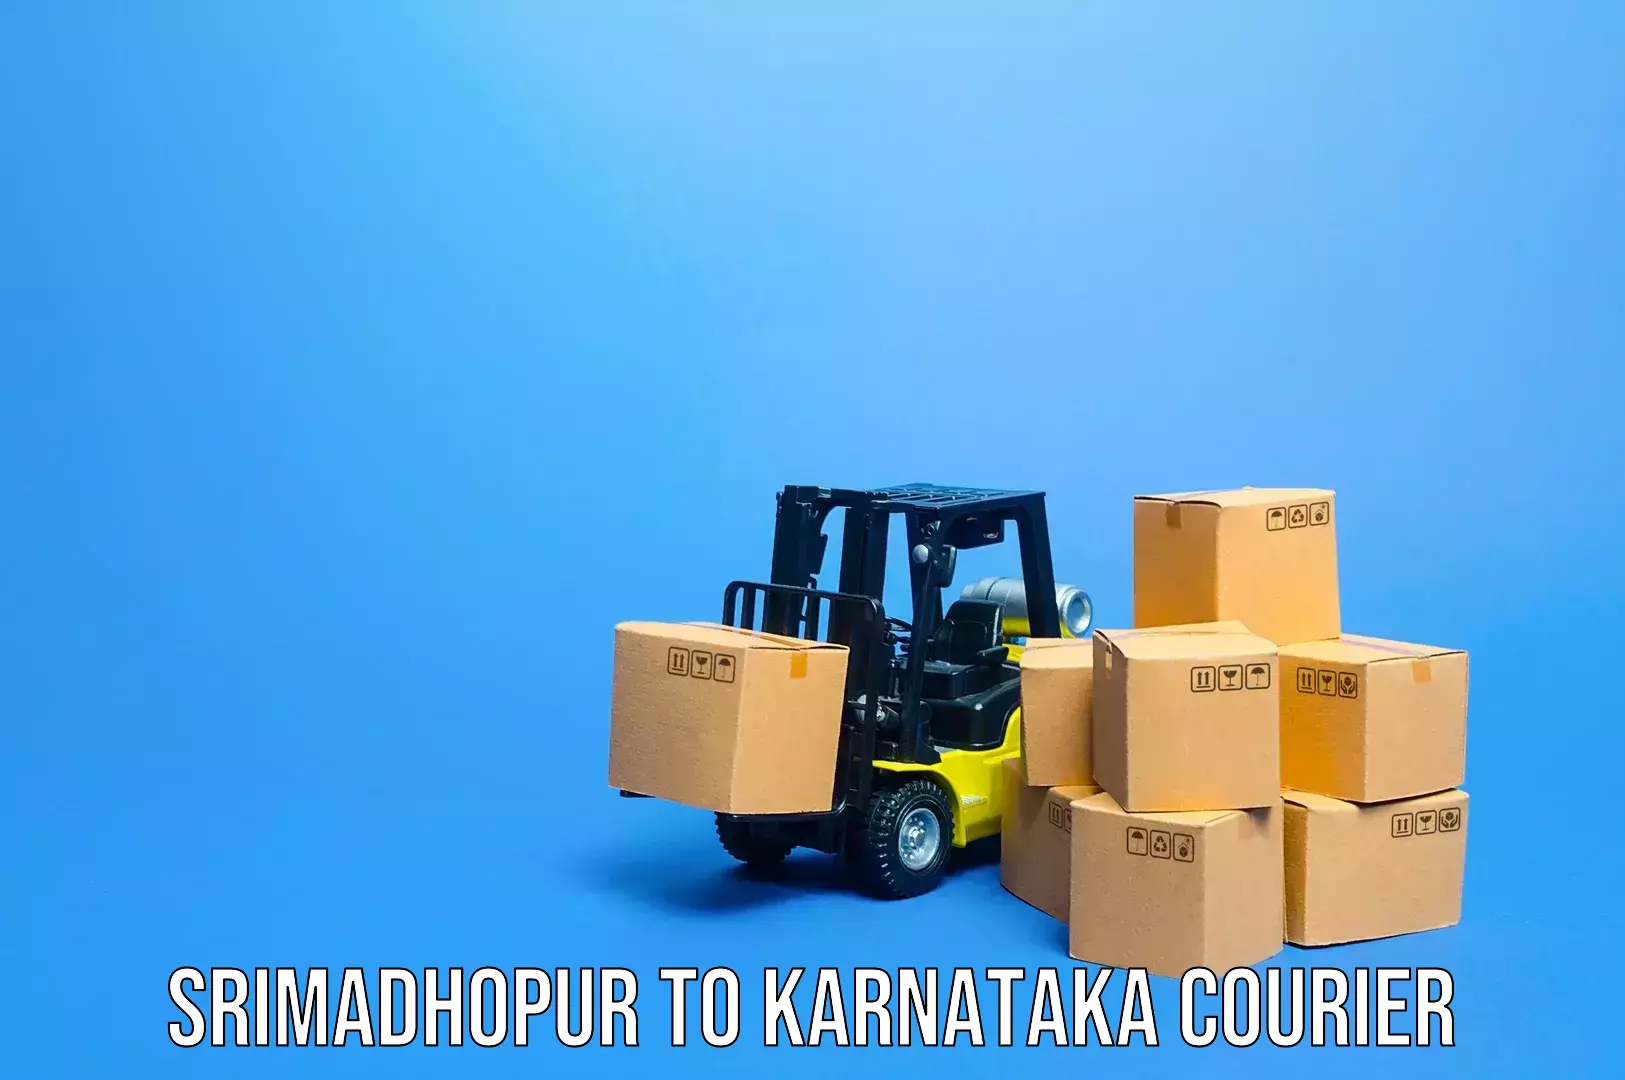 Luggage shipment tracking in Srimadhopur to Ukkadagatri